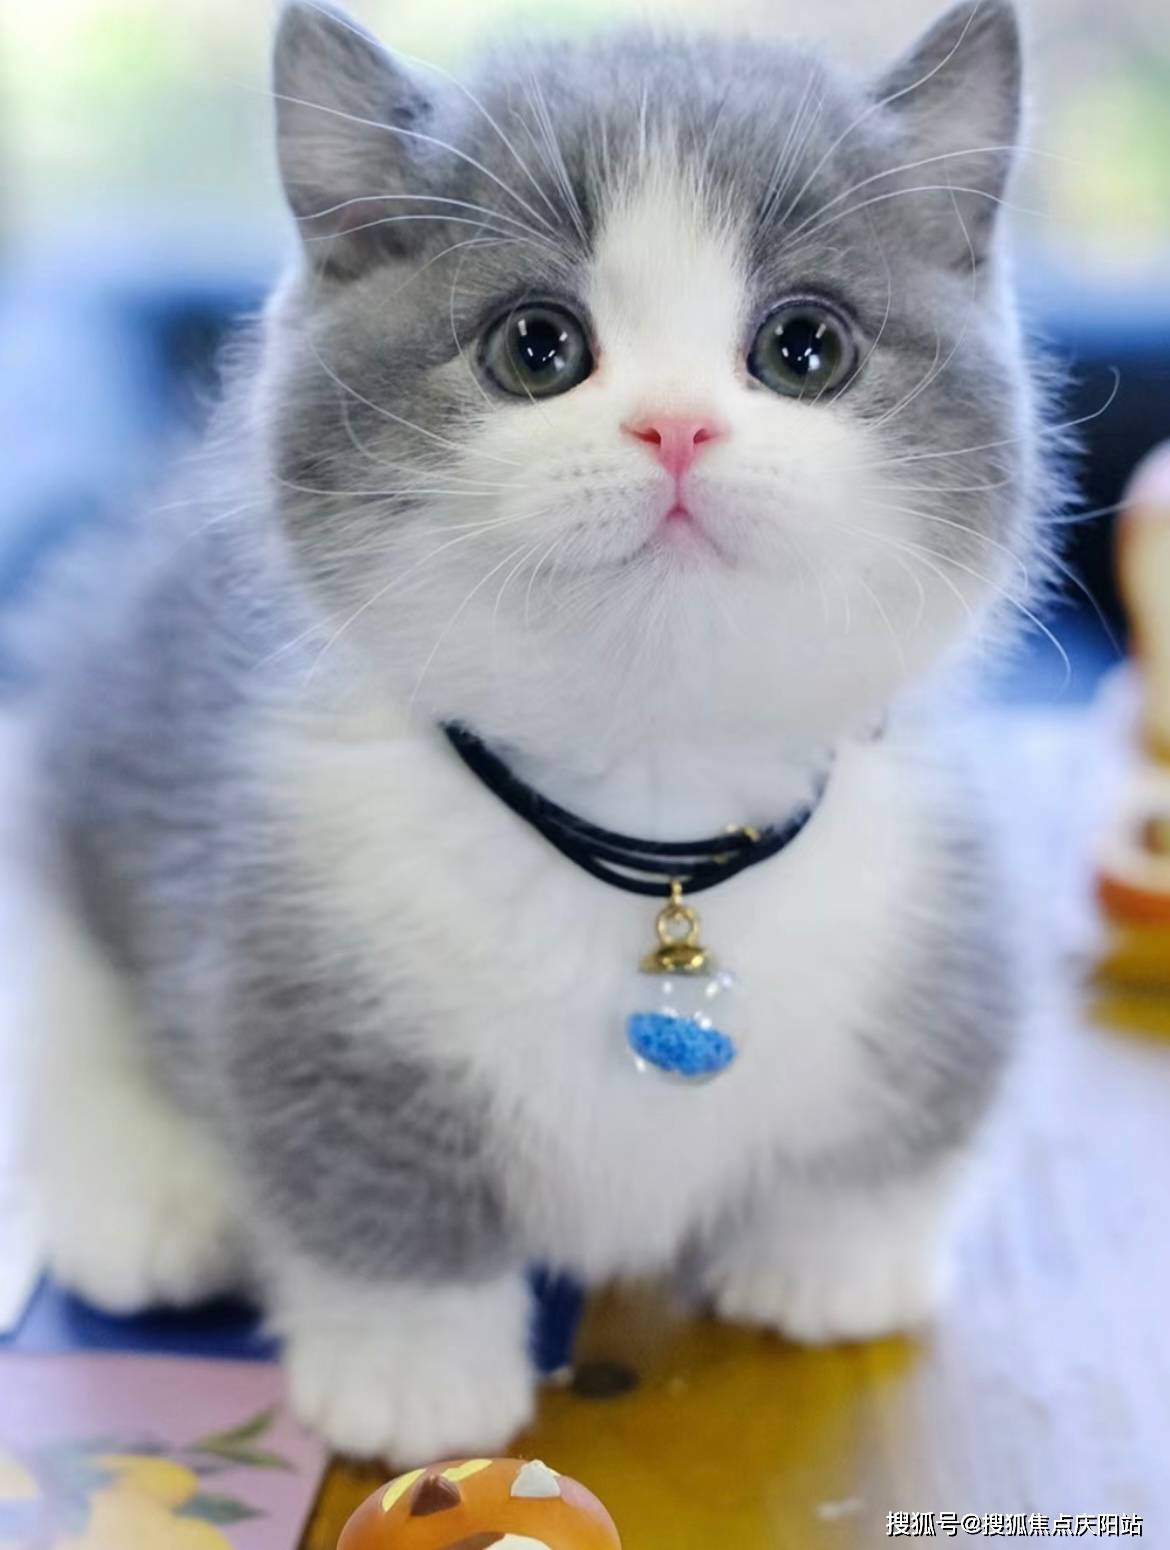 合肥买英短蓝白猫首页网站(合肥蜀山区)买英短蓝白猫哪里比较安全